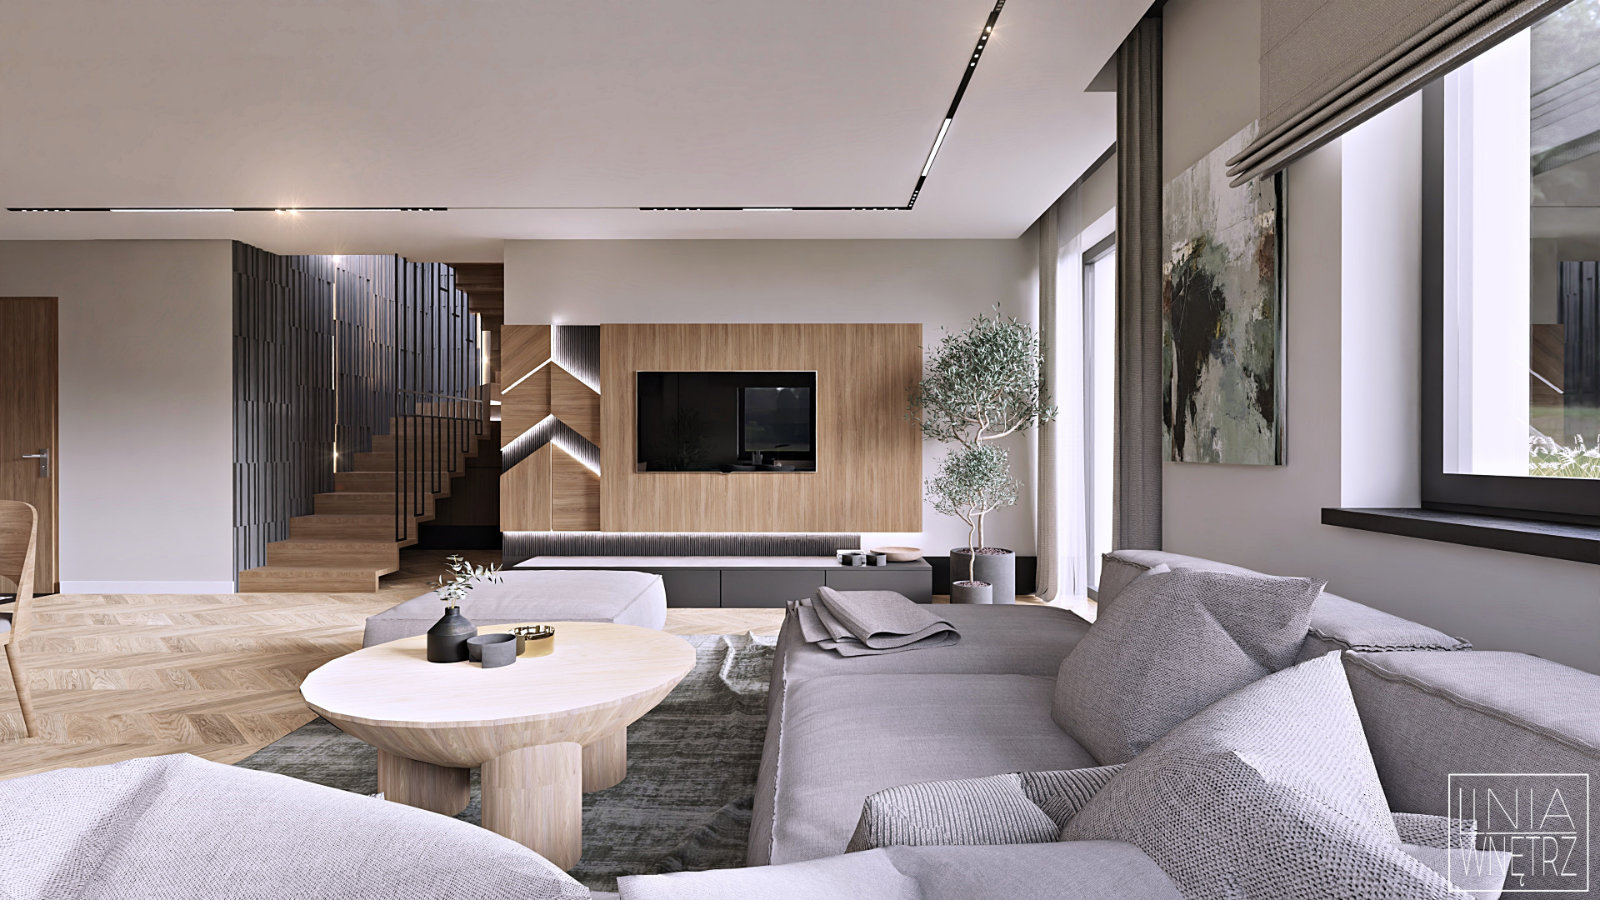 salon-nowoczesny-drewniany-stolik-kawowy-duza-jasna-sofa-narozna-dywan-szary-drewniane-panele-dekoracyjne-za-tv-beton-architektoniczny-na-scianie-projekt-linia-wnetrz-bielsko-biala